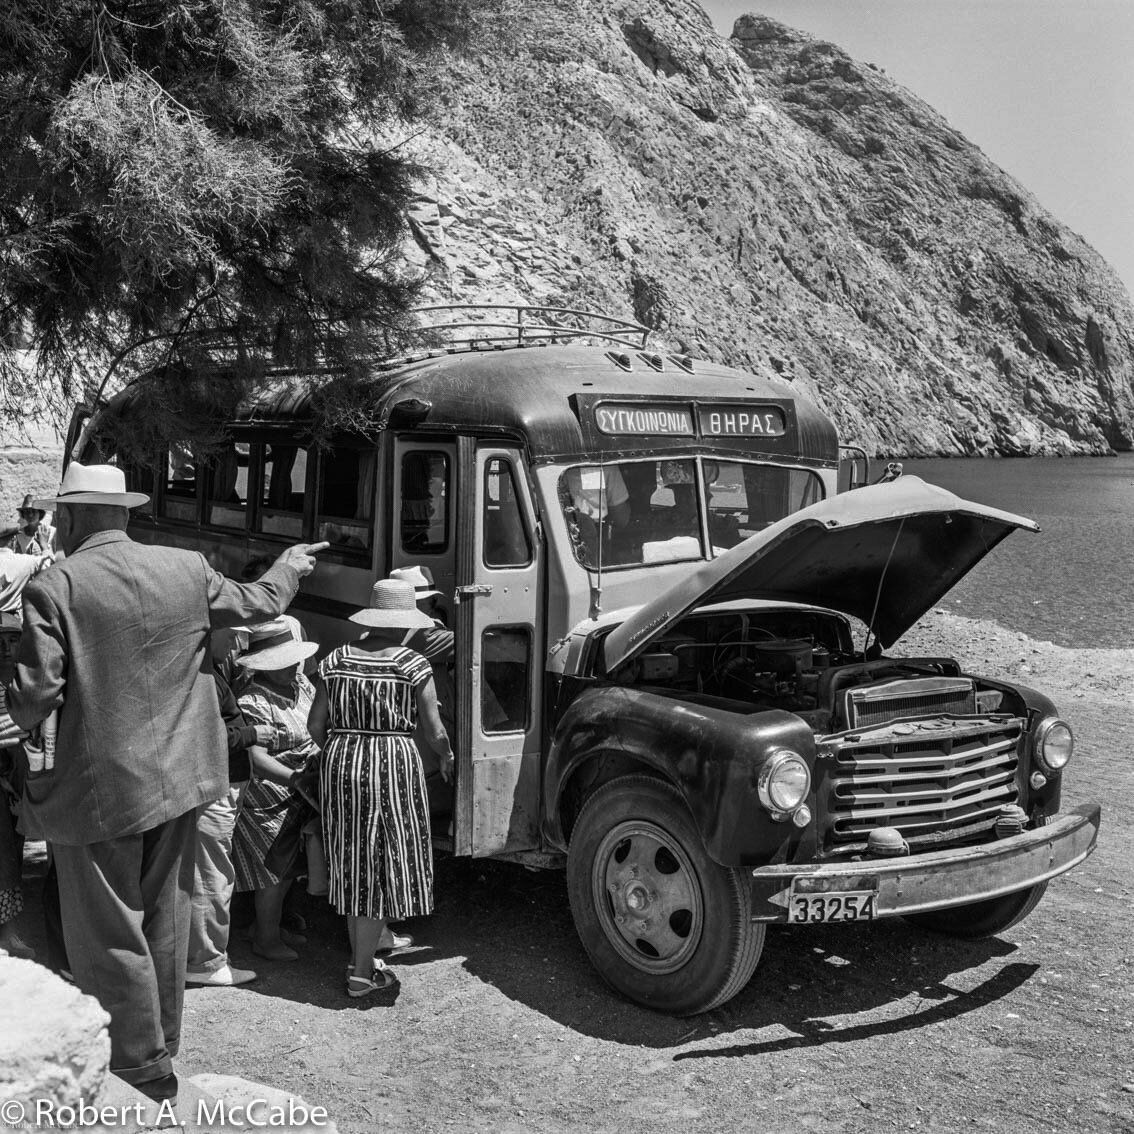 Το πρώτο λεωφορείο του νησιού, από την Περίσσα στα Φηρά. (Από το λεύκωμα Σαντορίνη. Εικόνες μιας άλλης εποχής των εκδόσεων πατάκη)